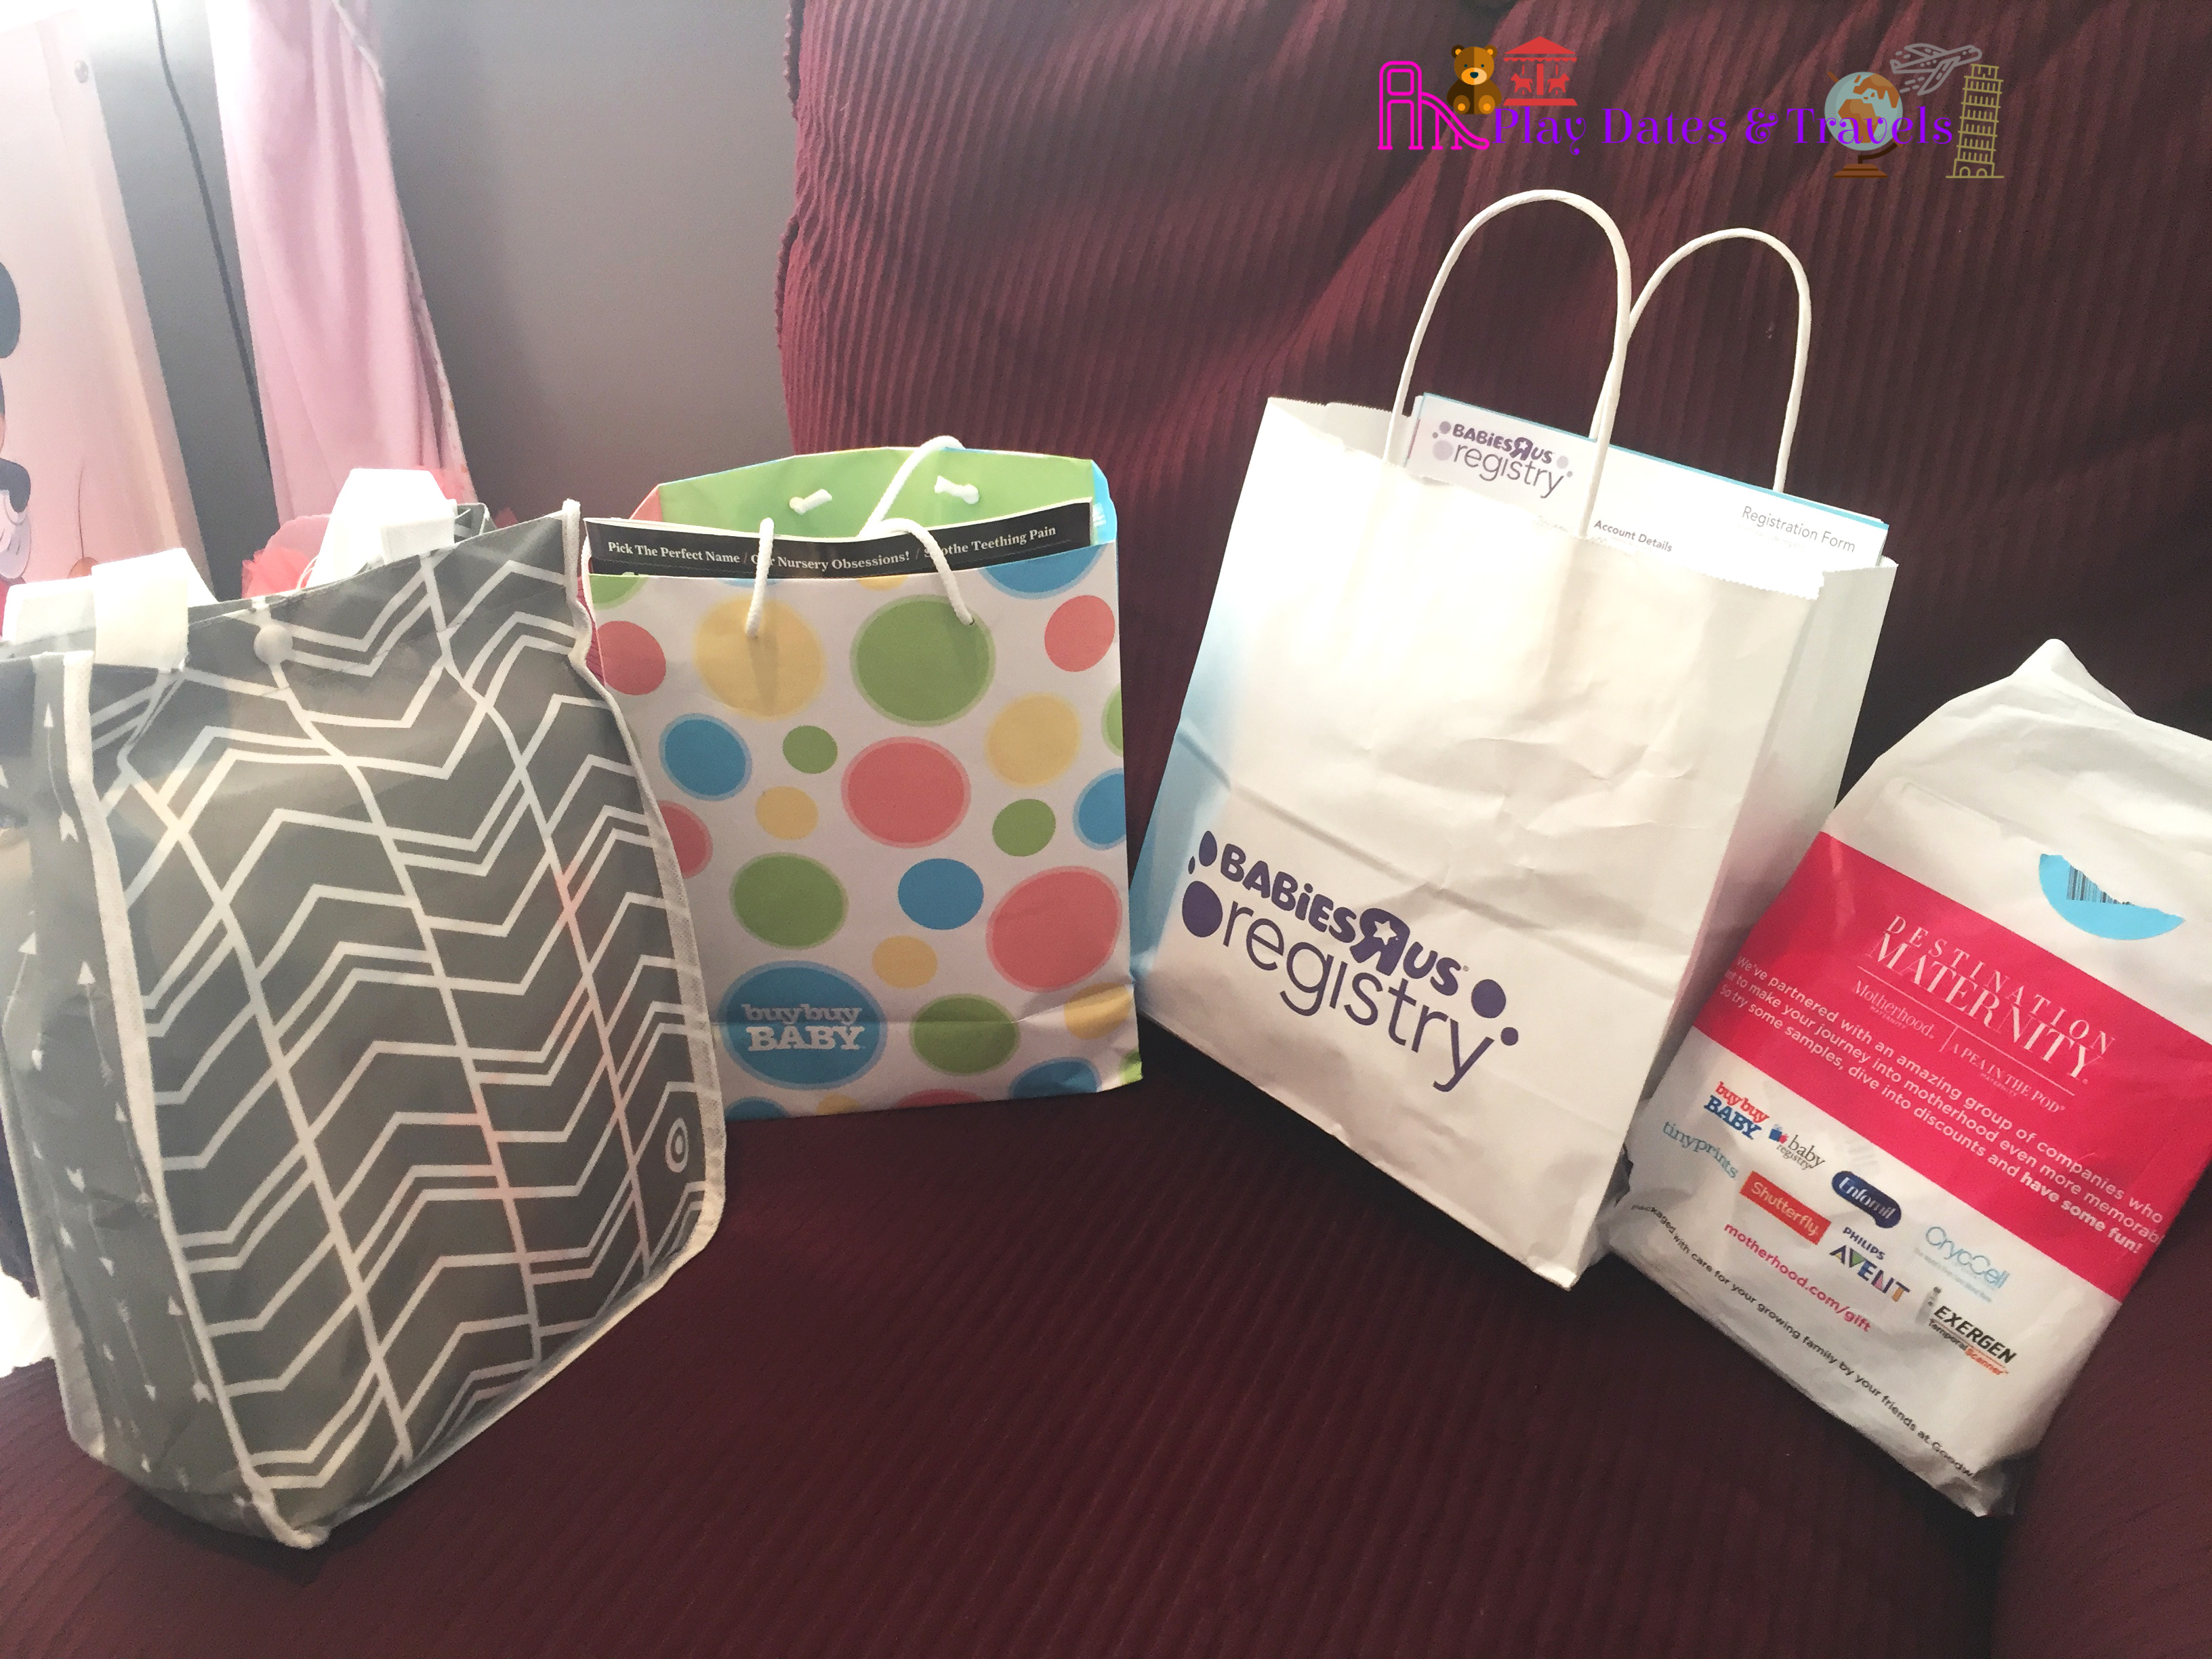 target free baby gift bag